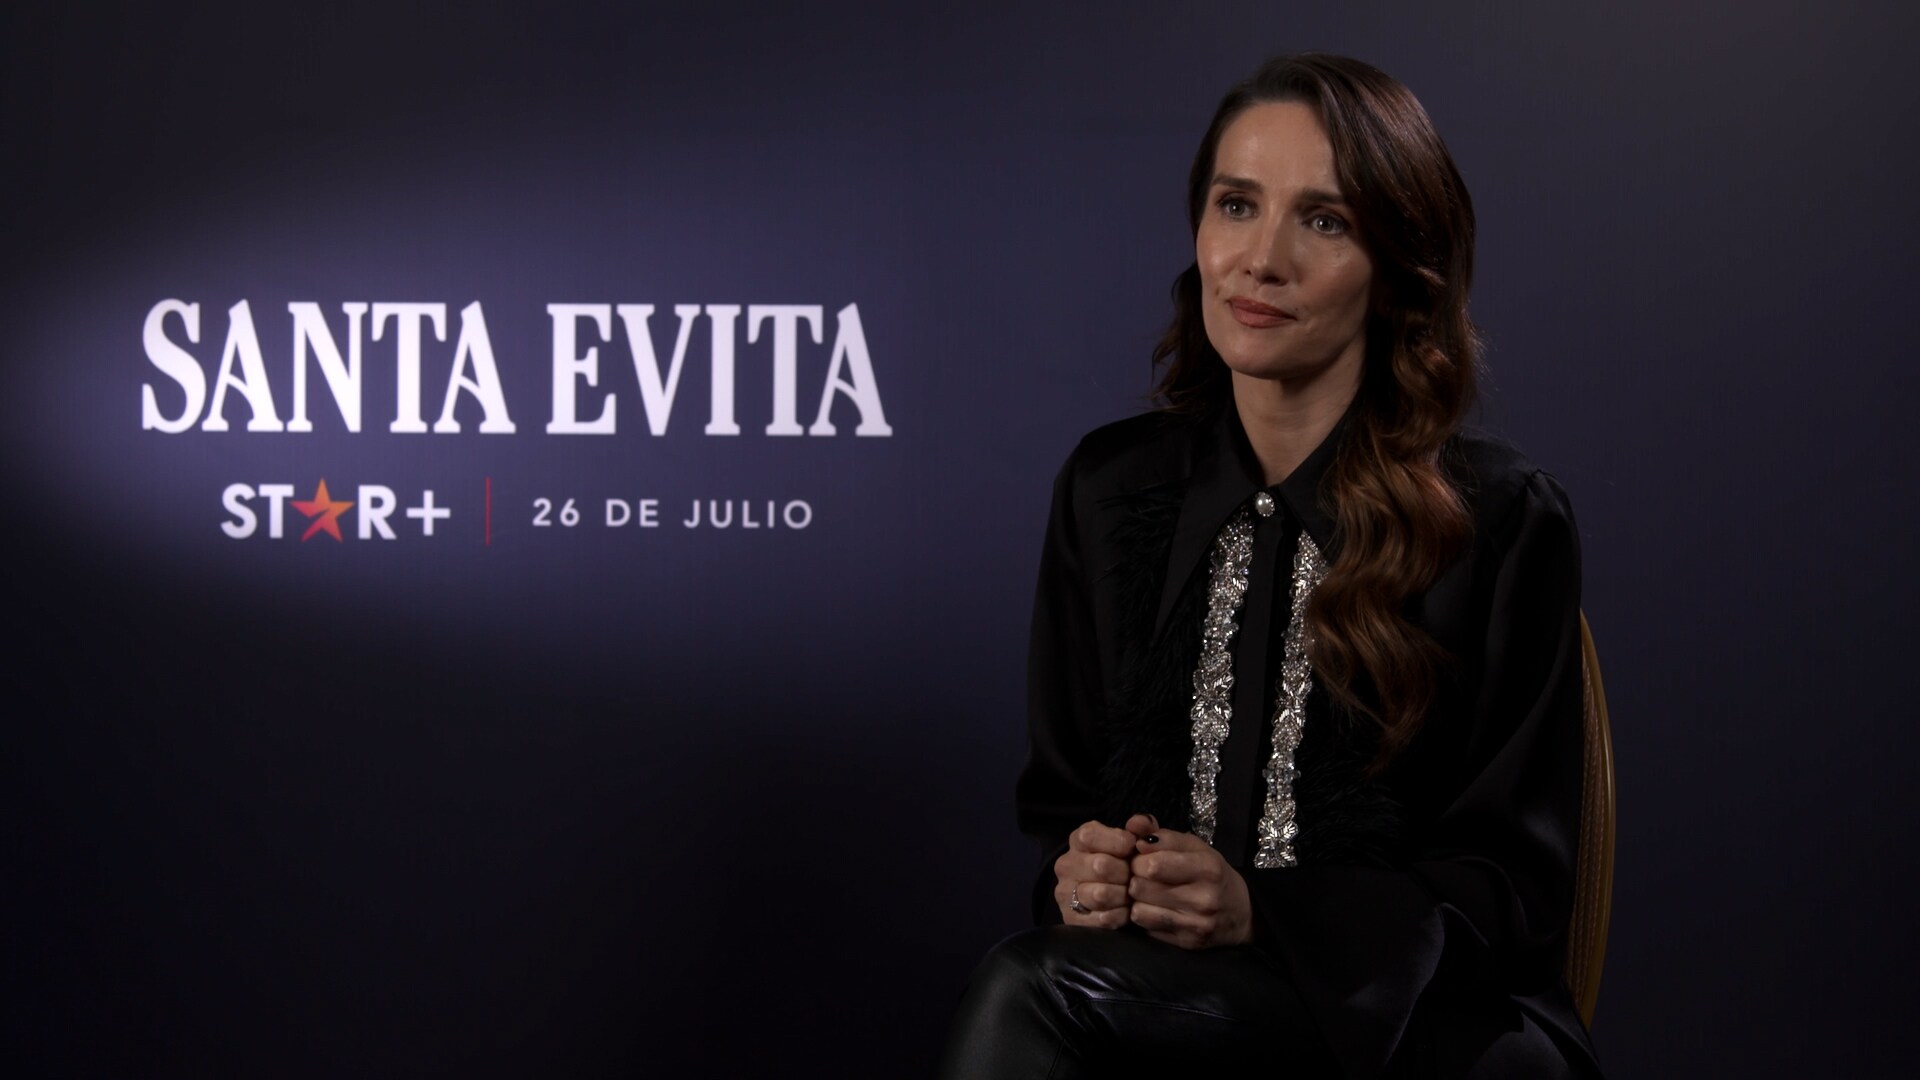 Santa Evita | Entrevista completa a Natalia Oreiro | Star+